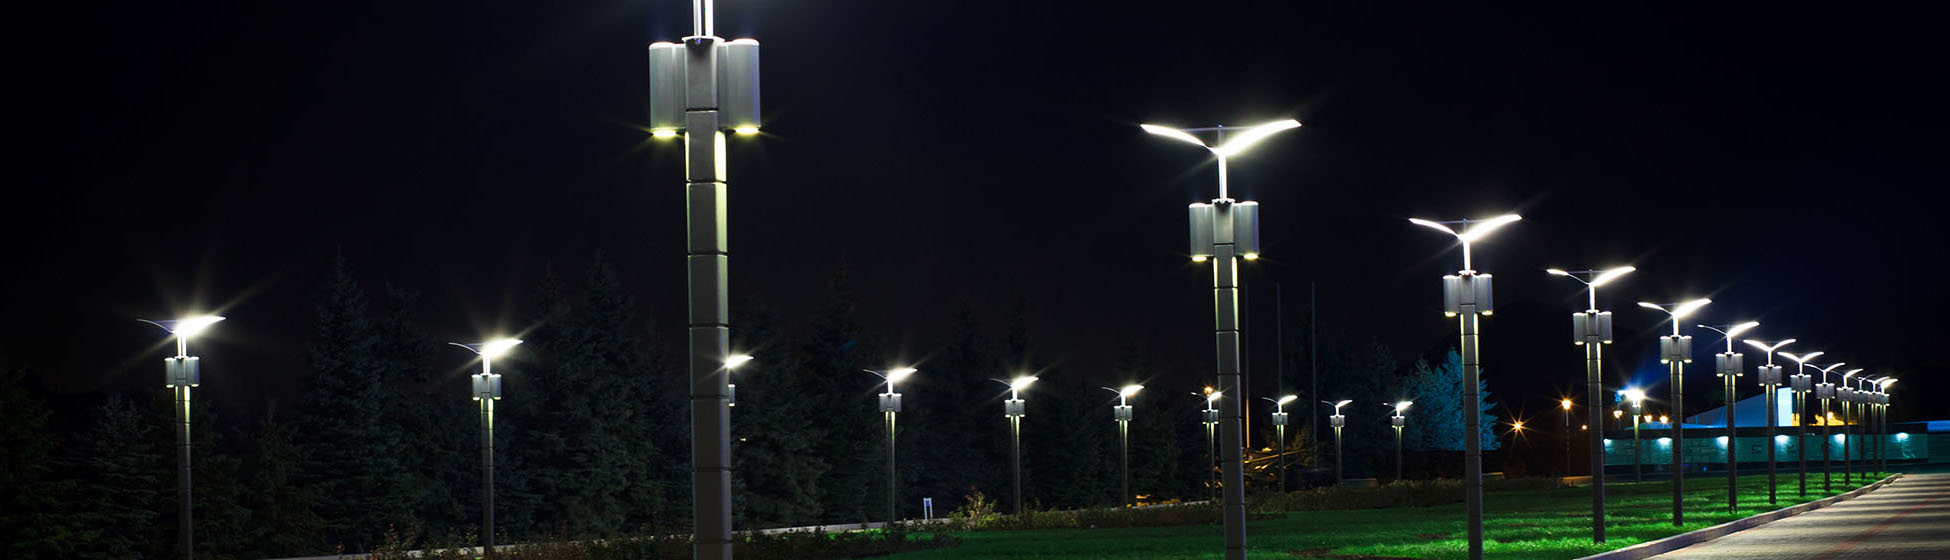 Eclairage public led solaire